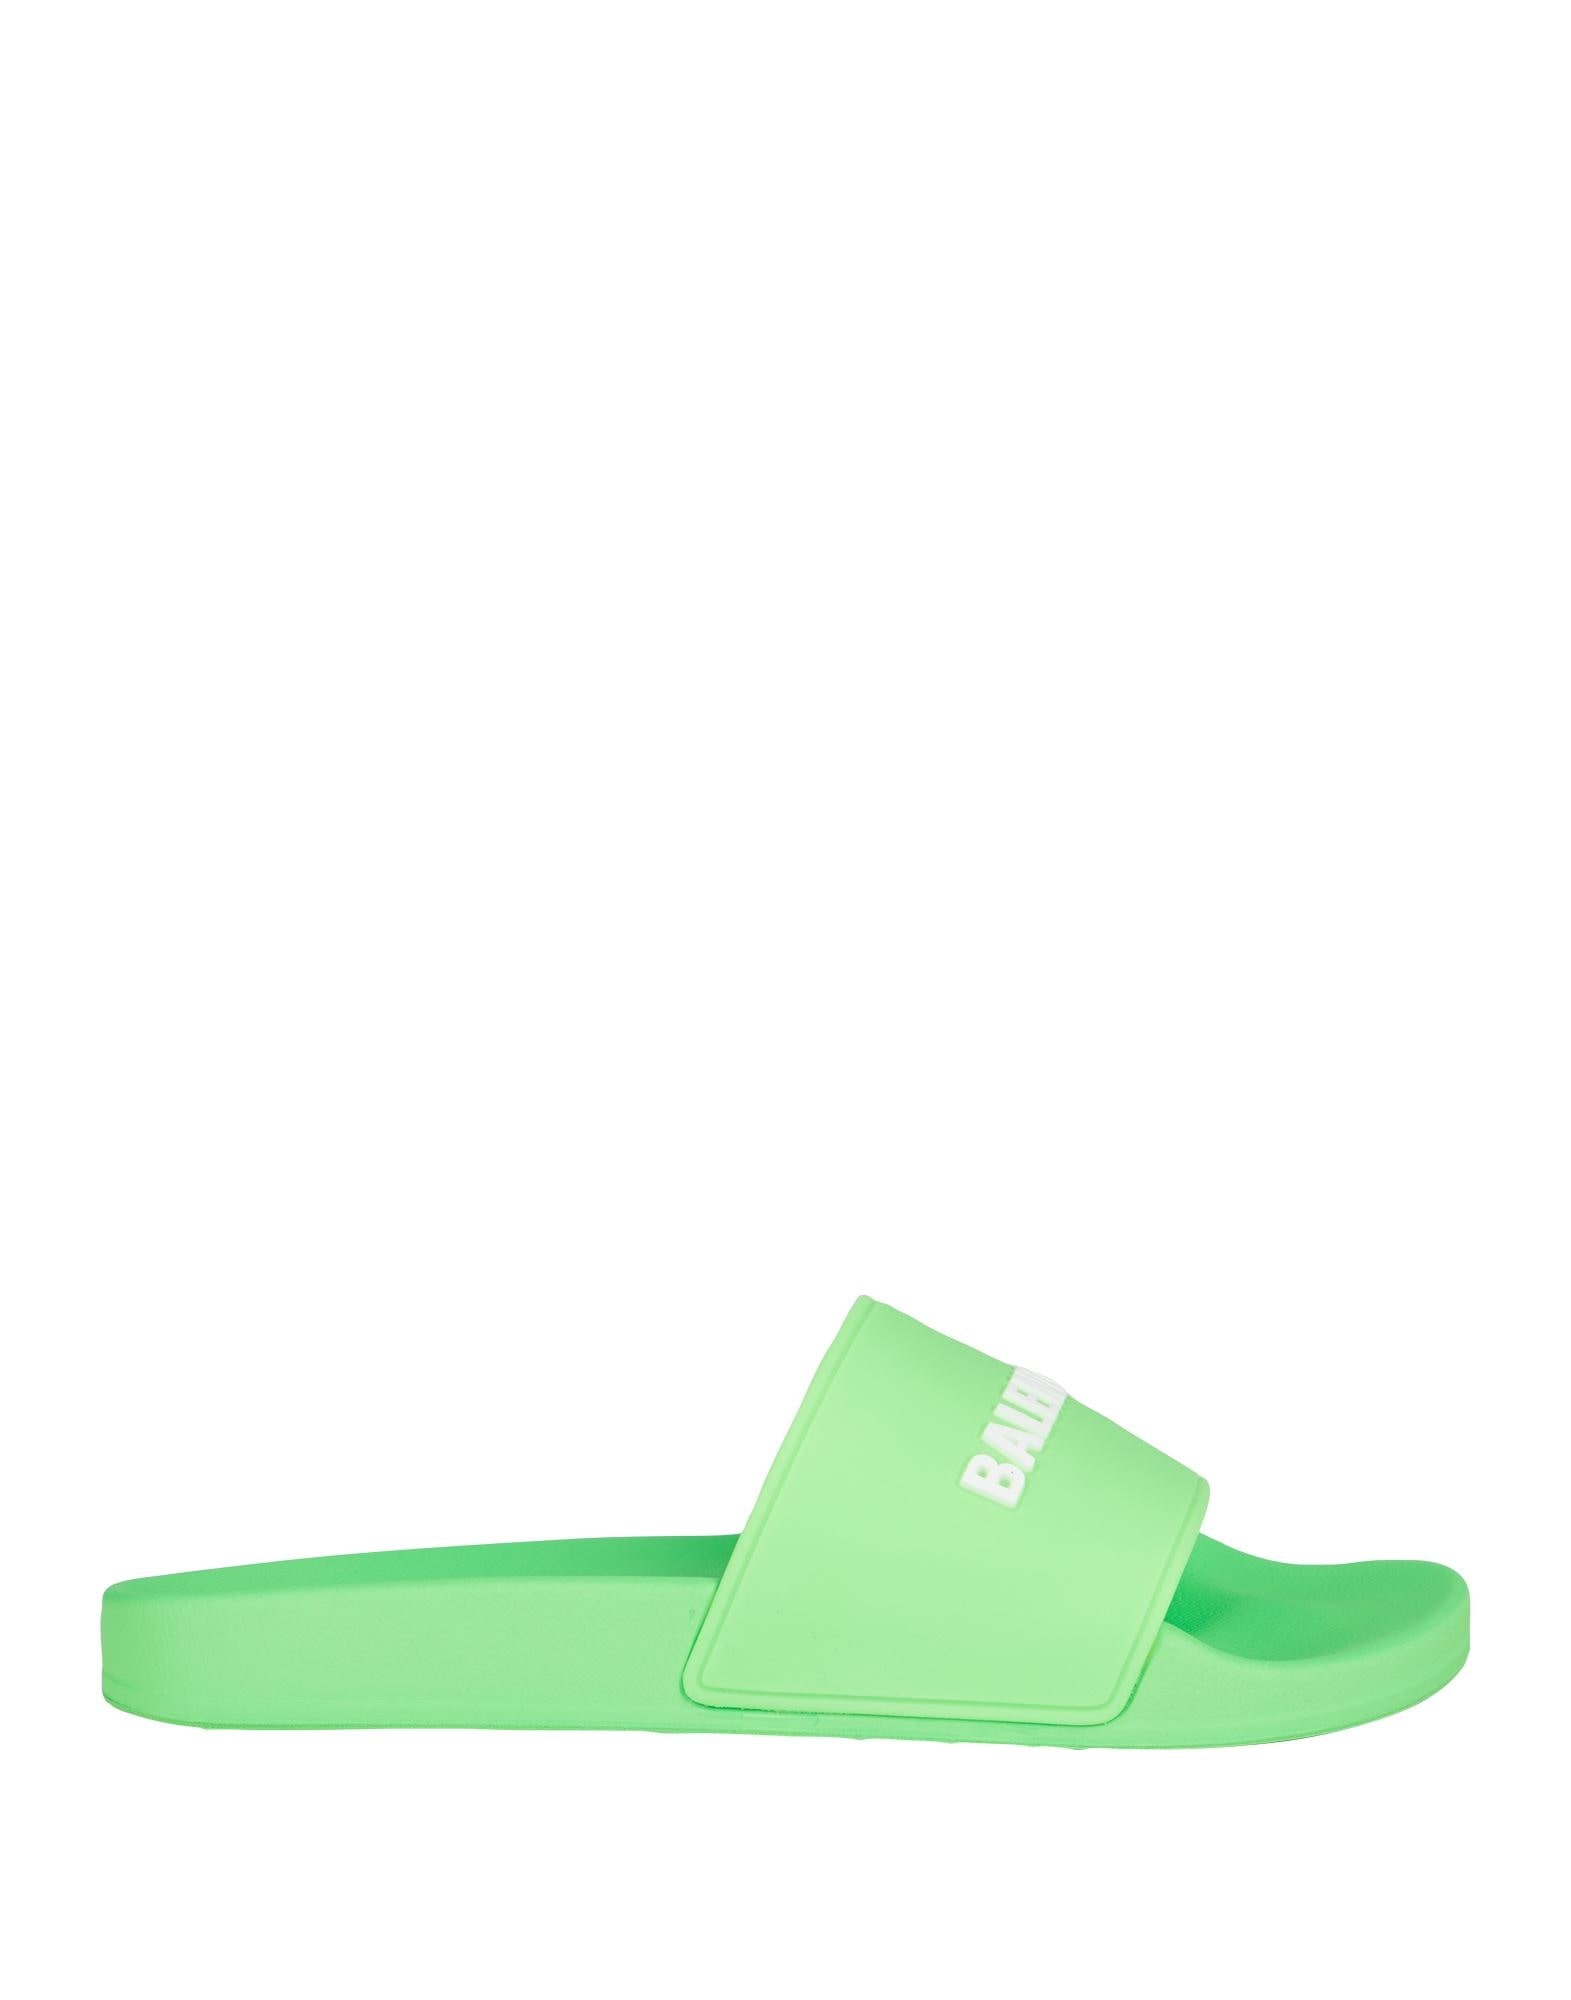 Green Men's Sandals - 1